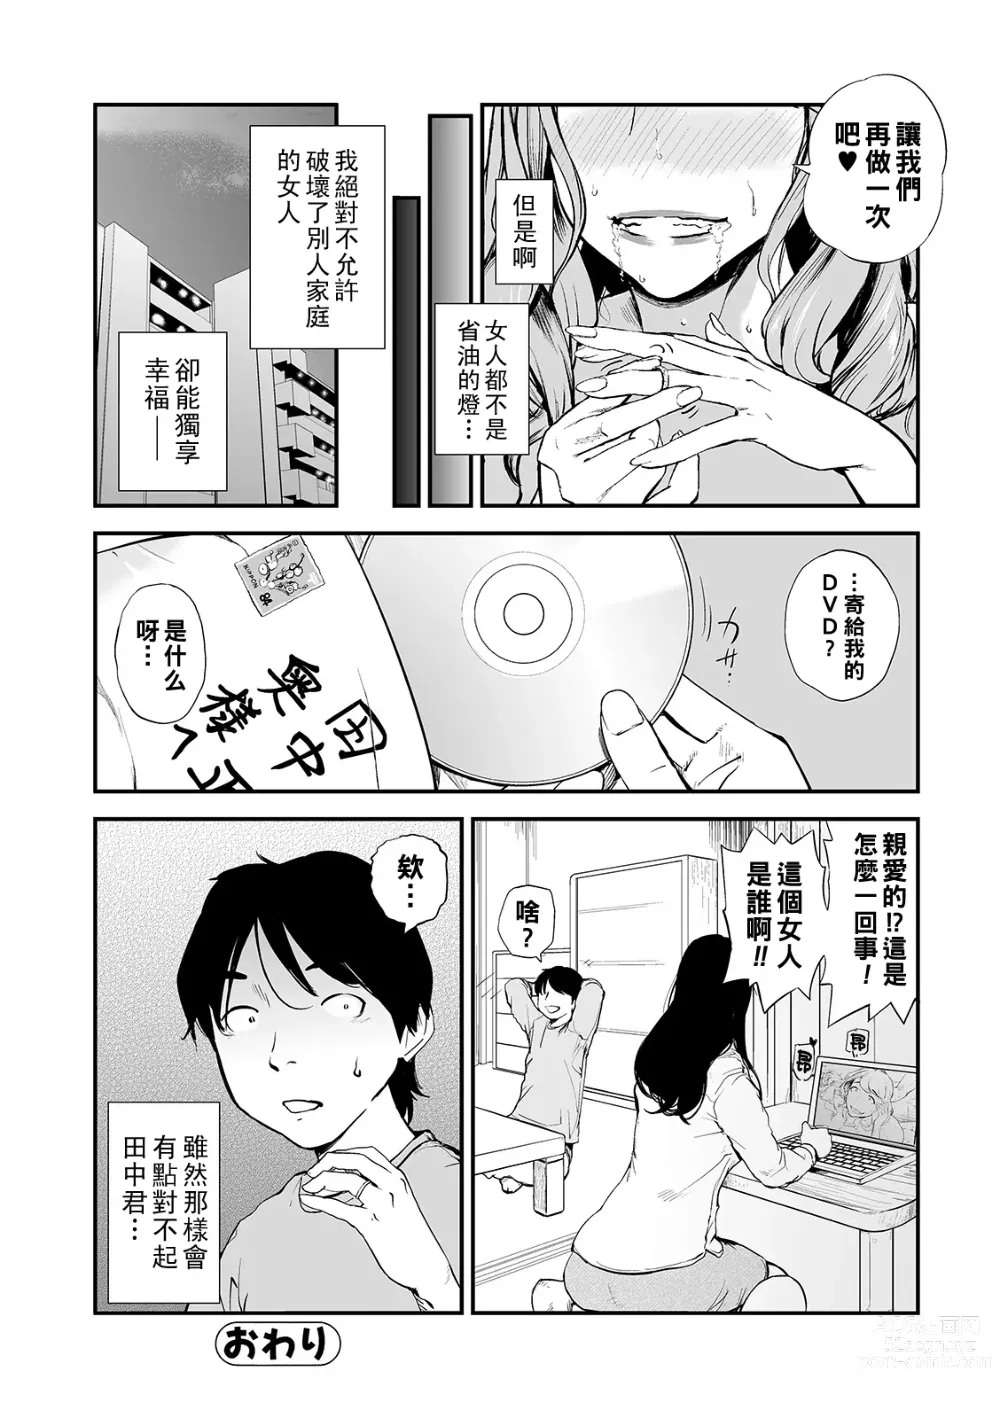 Page 112 of manga Min Pako Tsuma 1-5